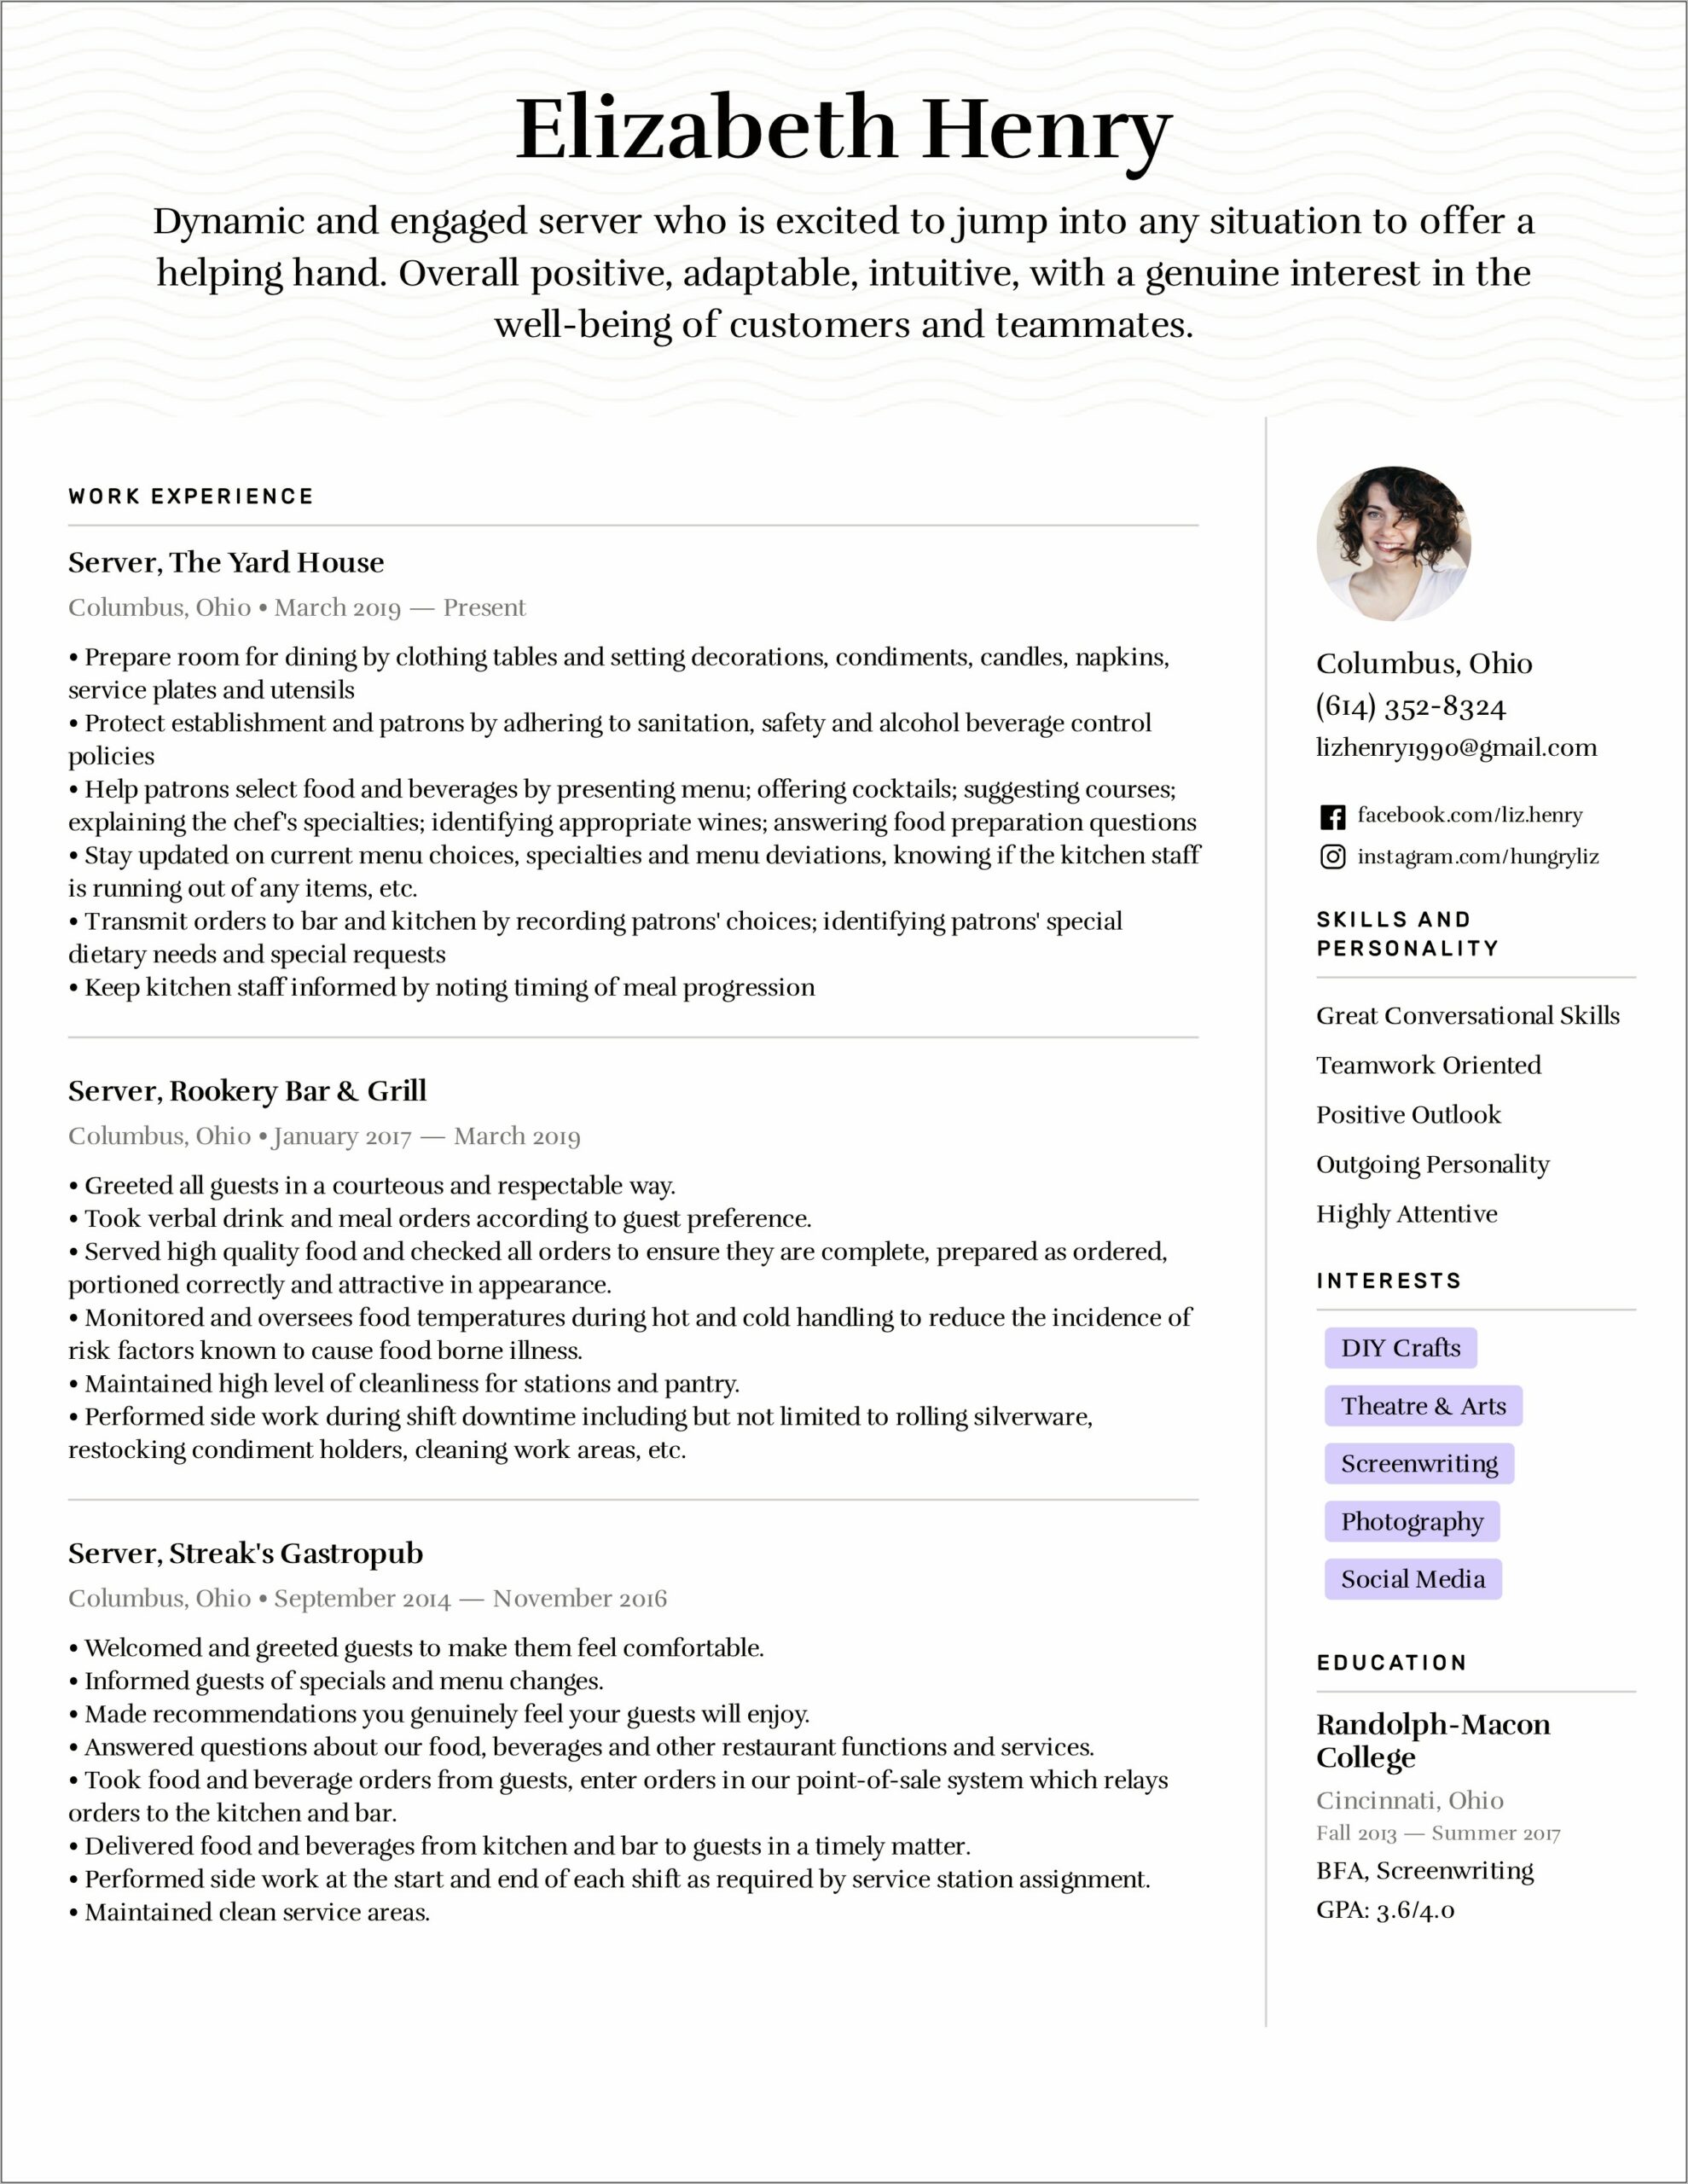 Resume Job Description For Food Server